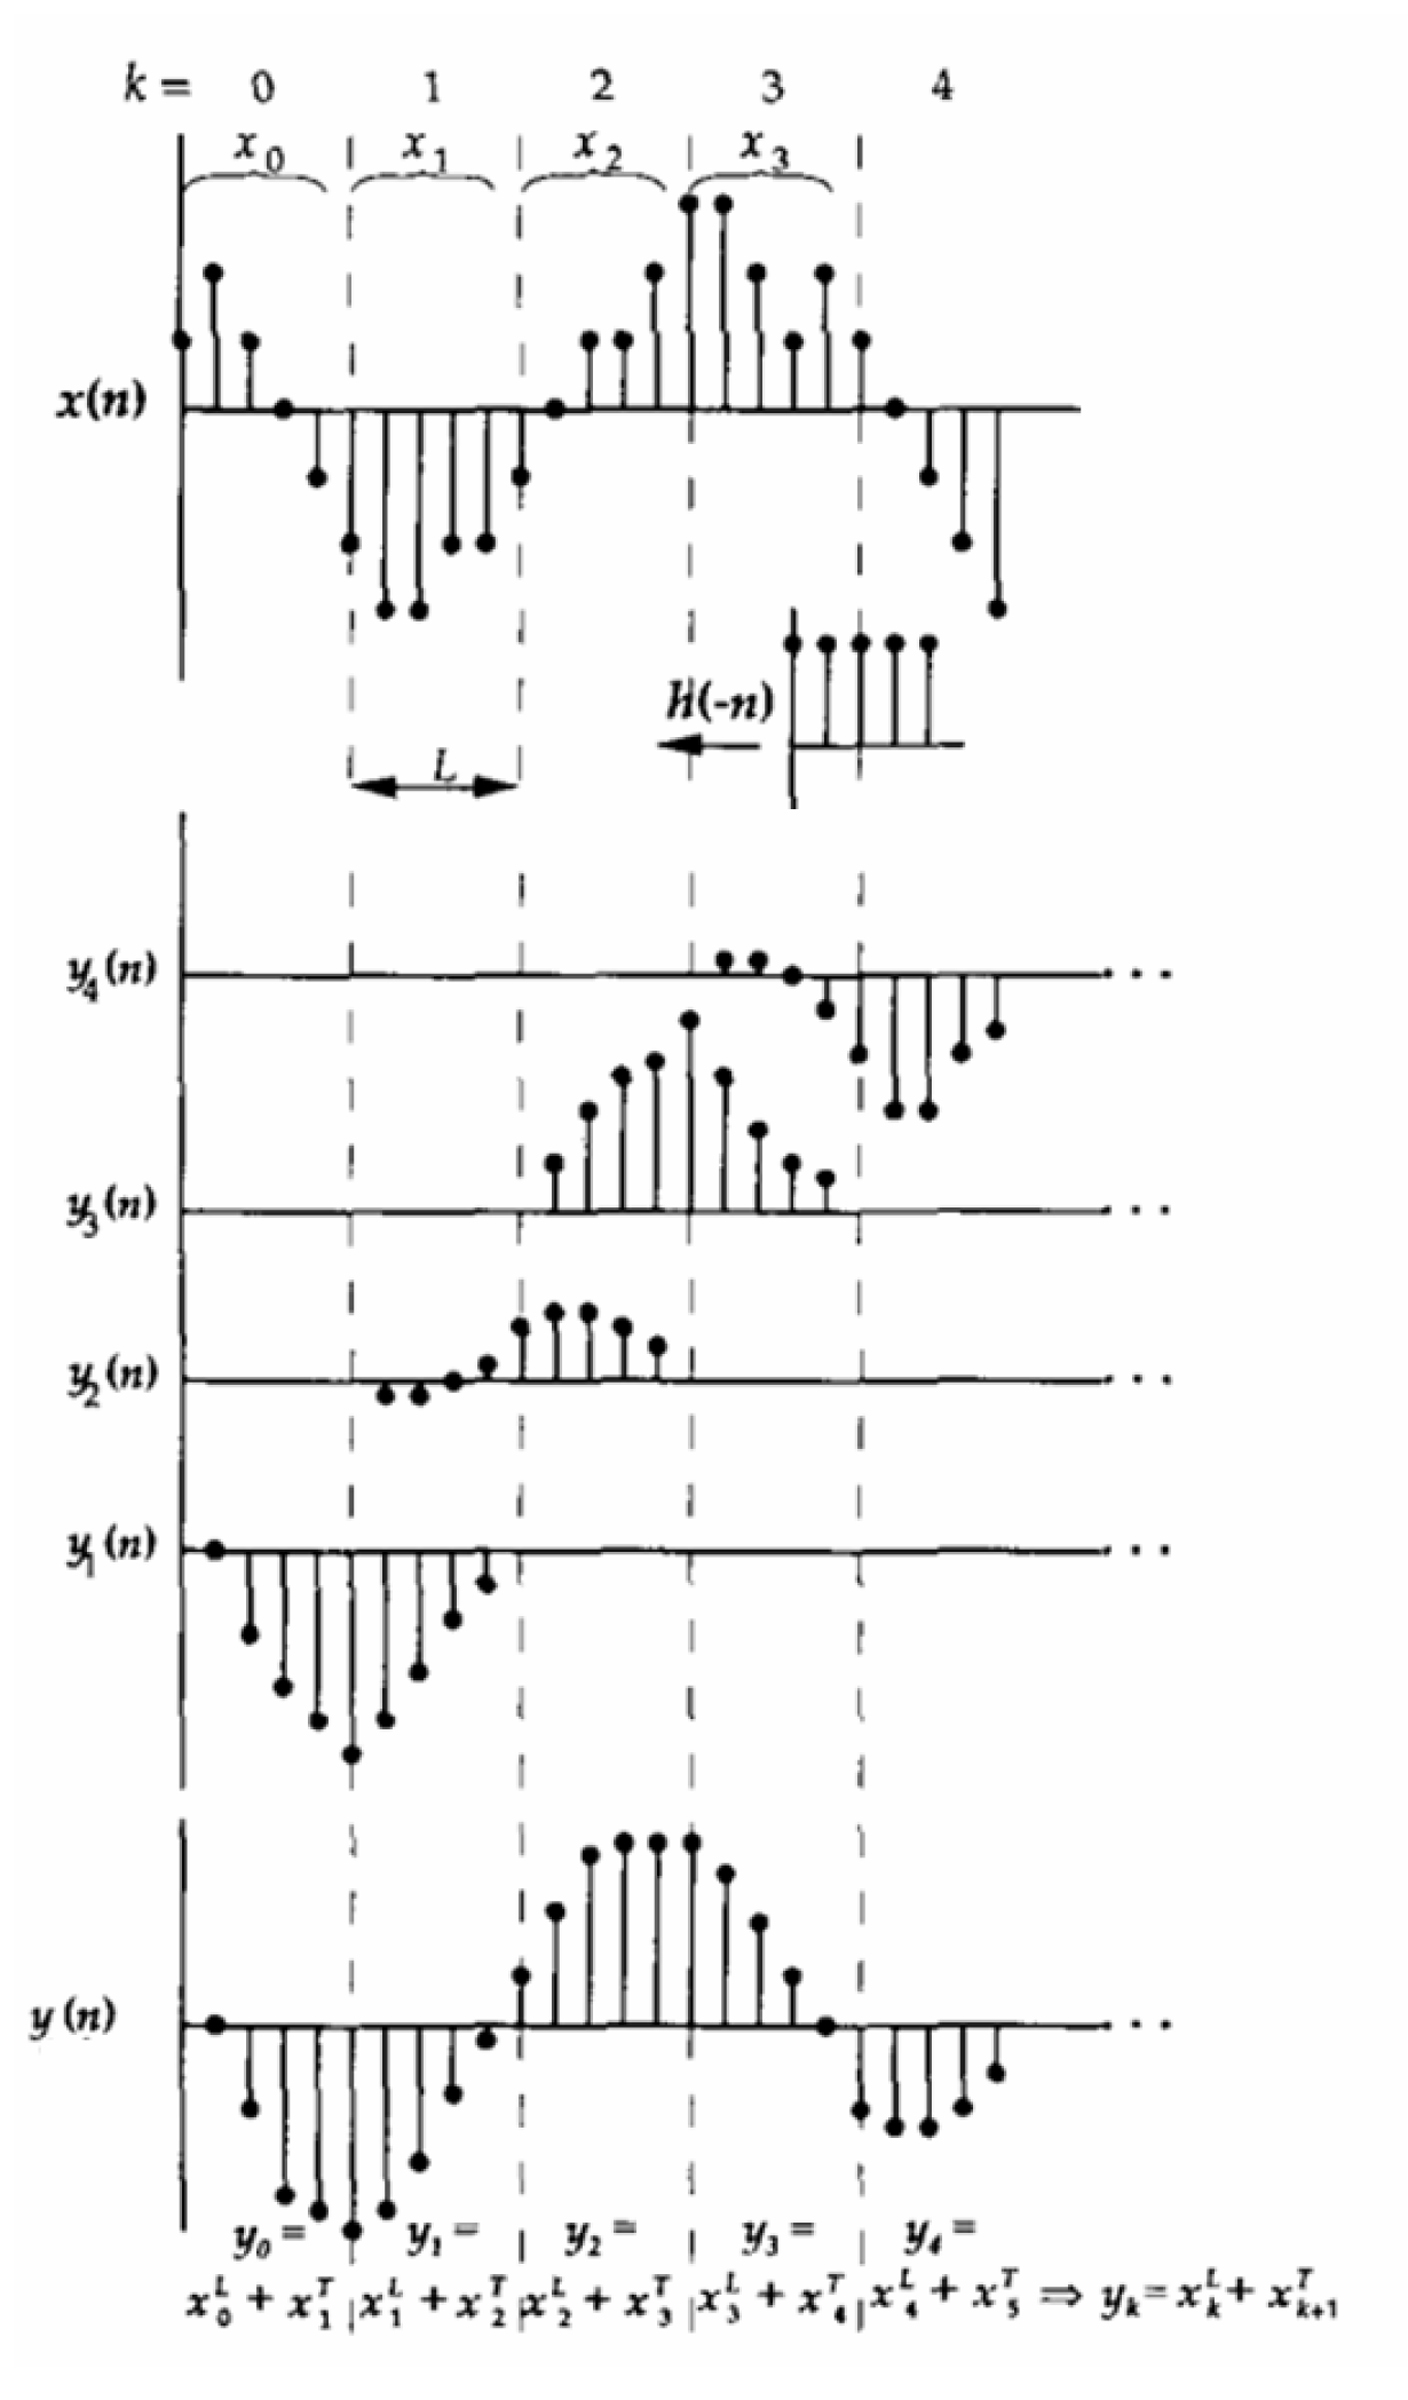 Method for realizing linear phase IIR (infinite impulse response) filter